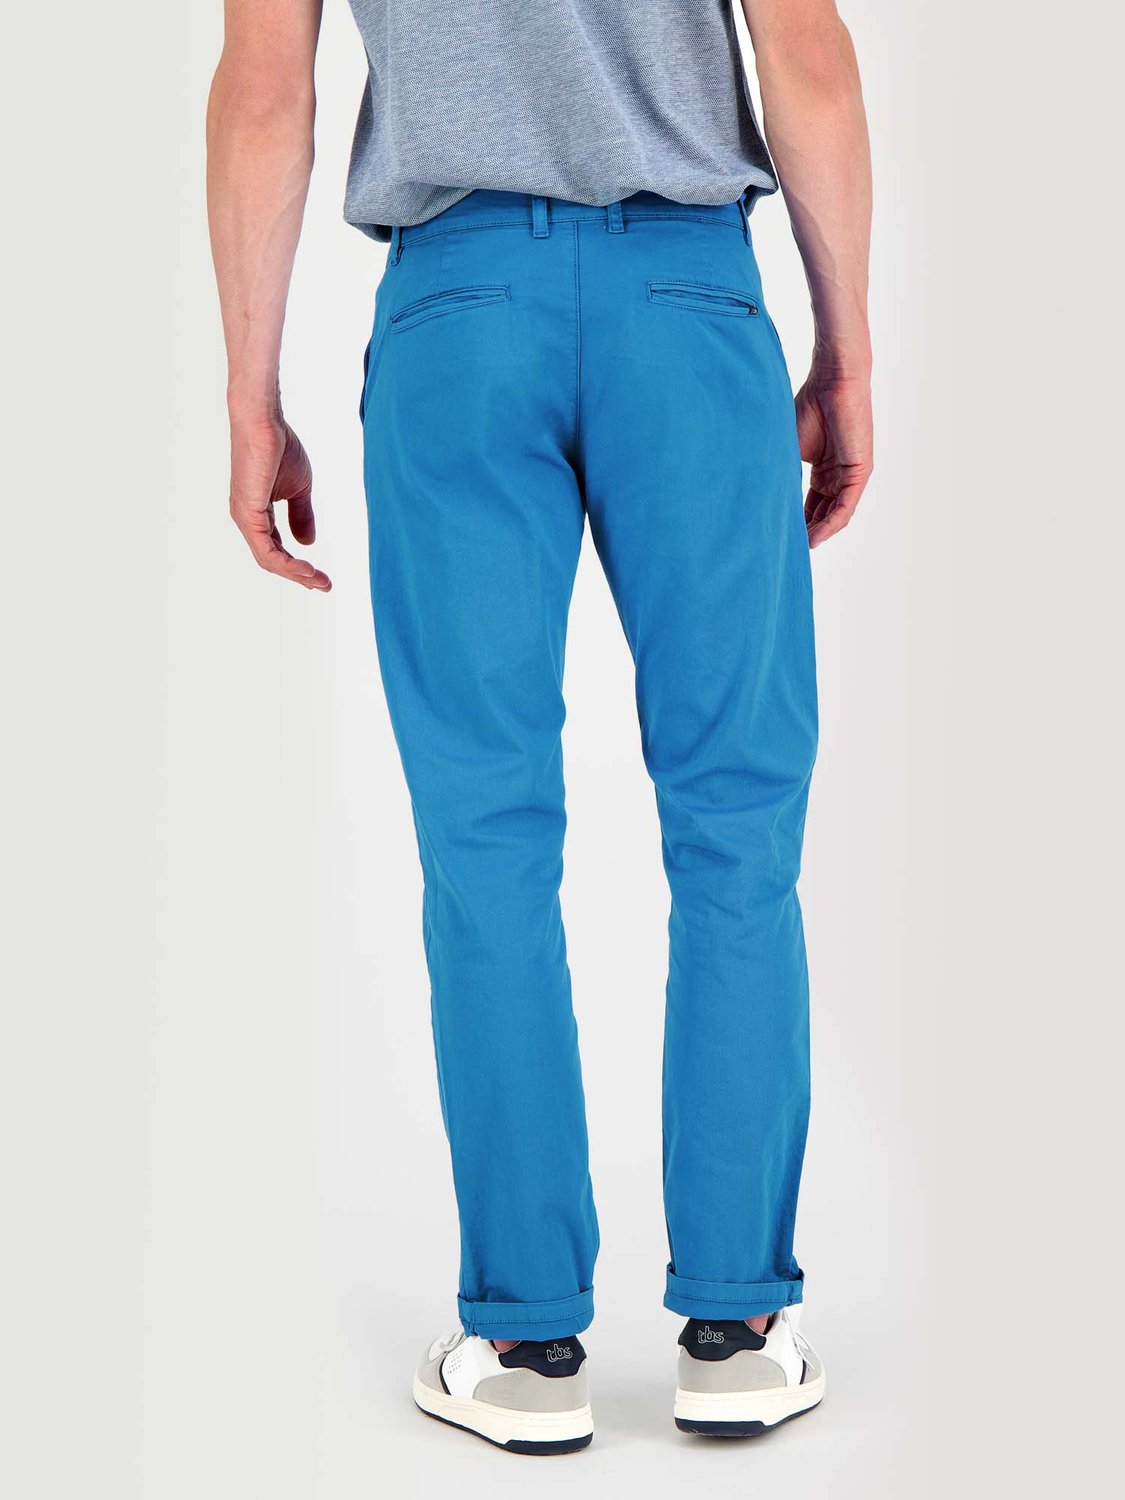 Pantalon Chino Homme Coton Stretch Bleu